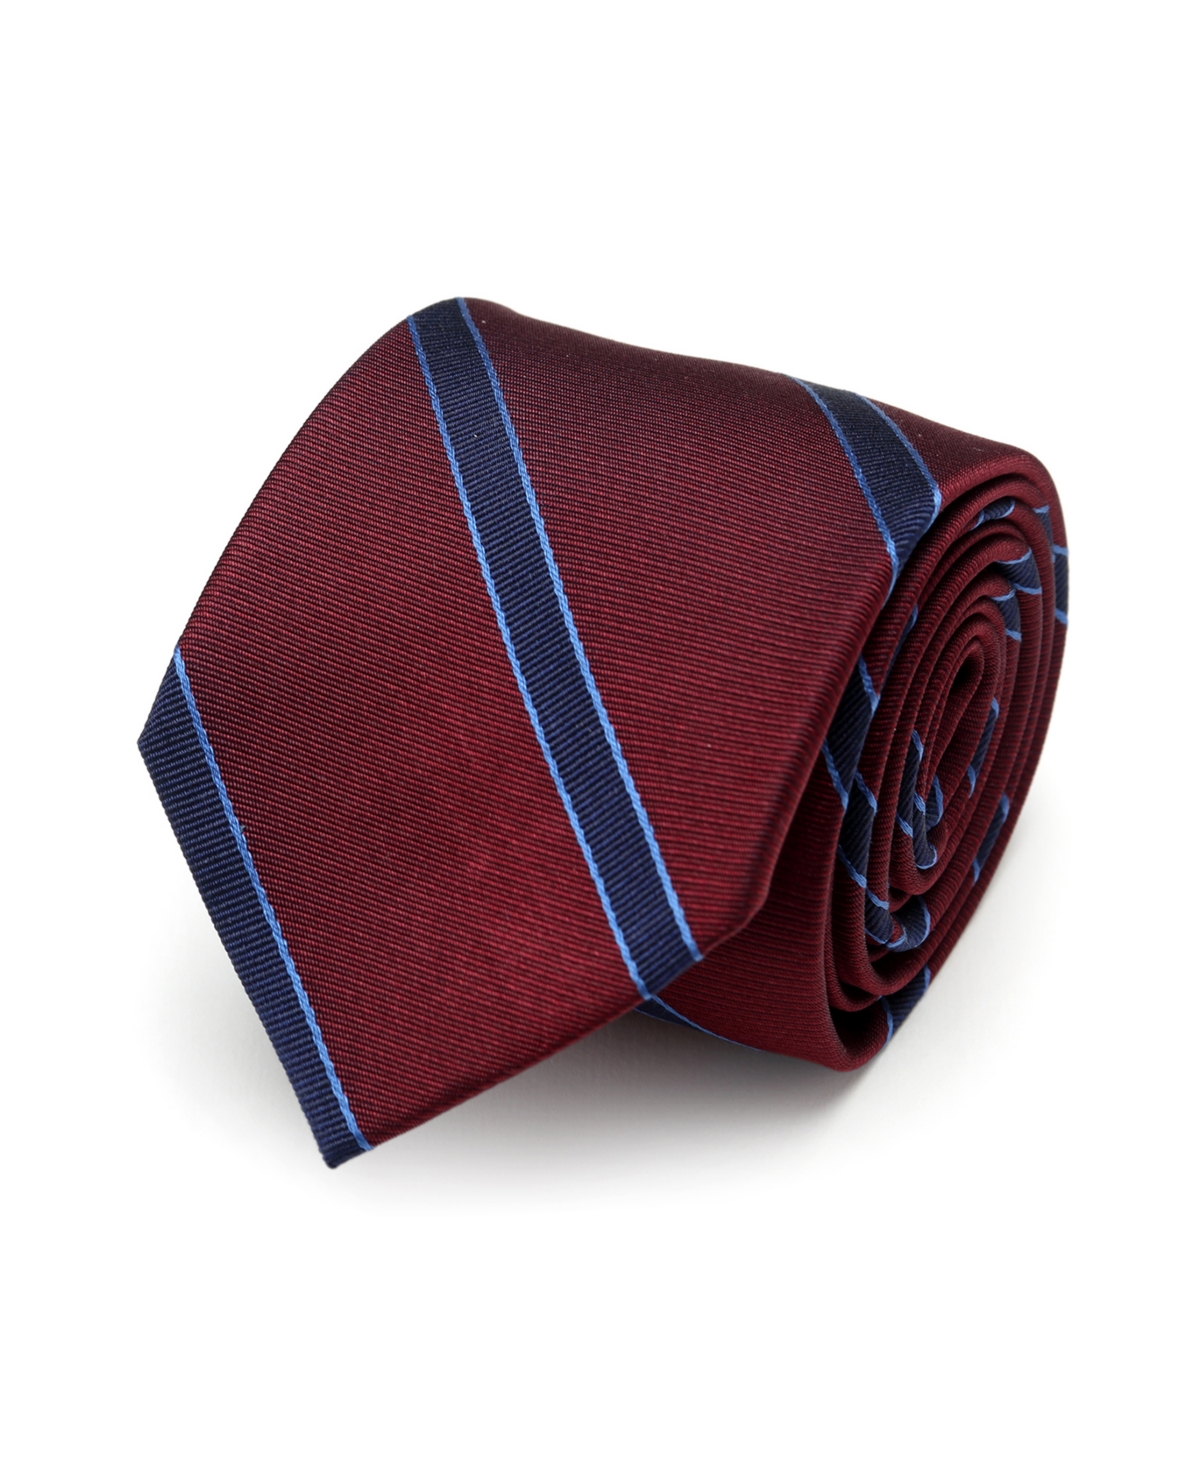 The Phillip Men's Tie - Red